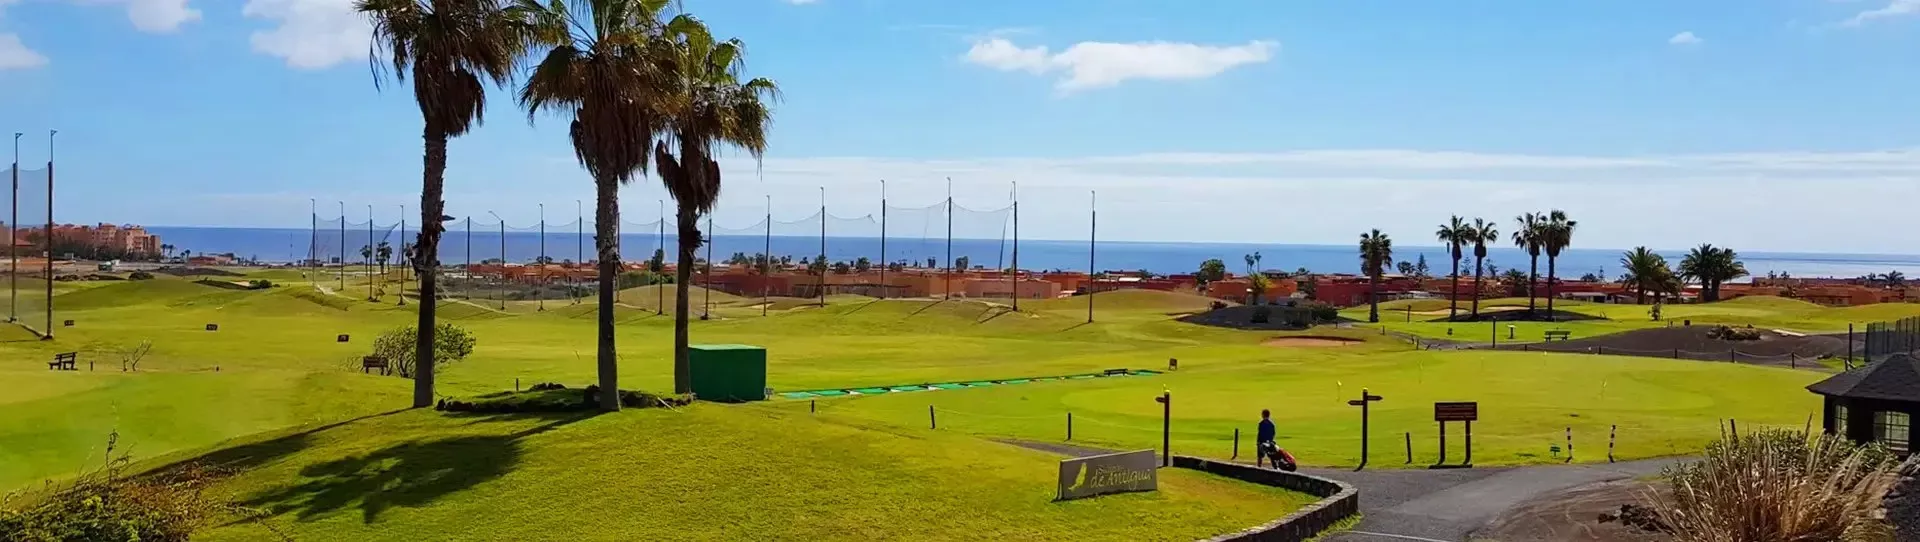 Spain golf courses - Salinas de Antigua Golf Course - Photo 1